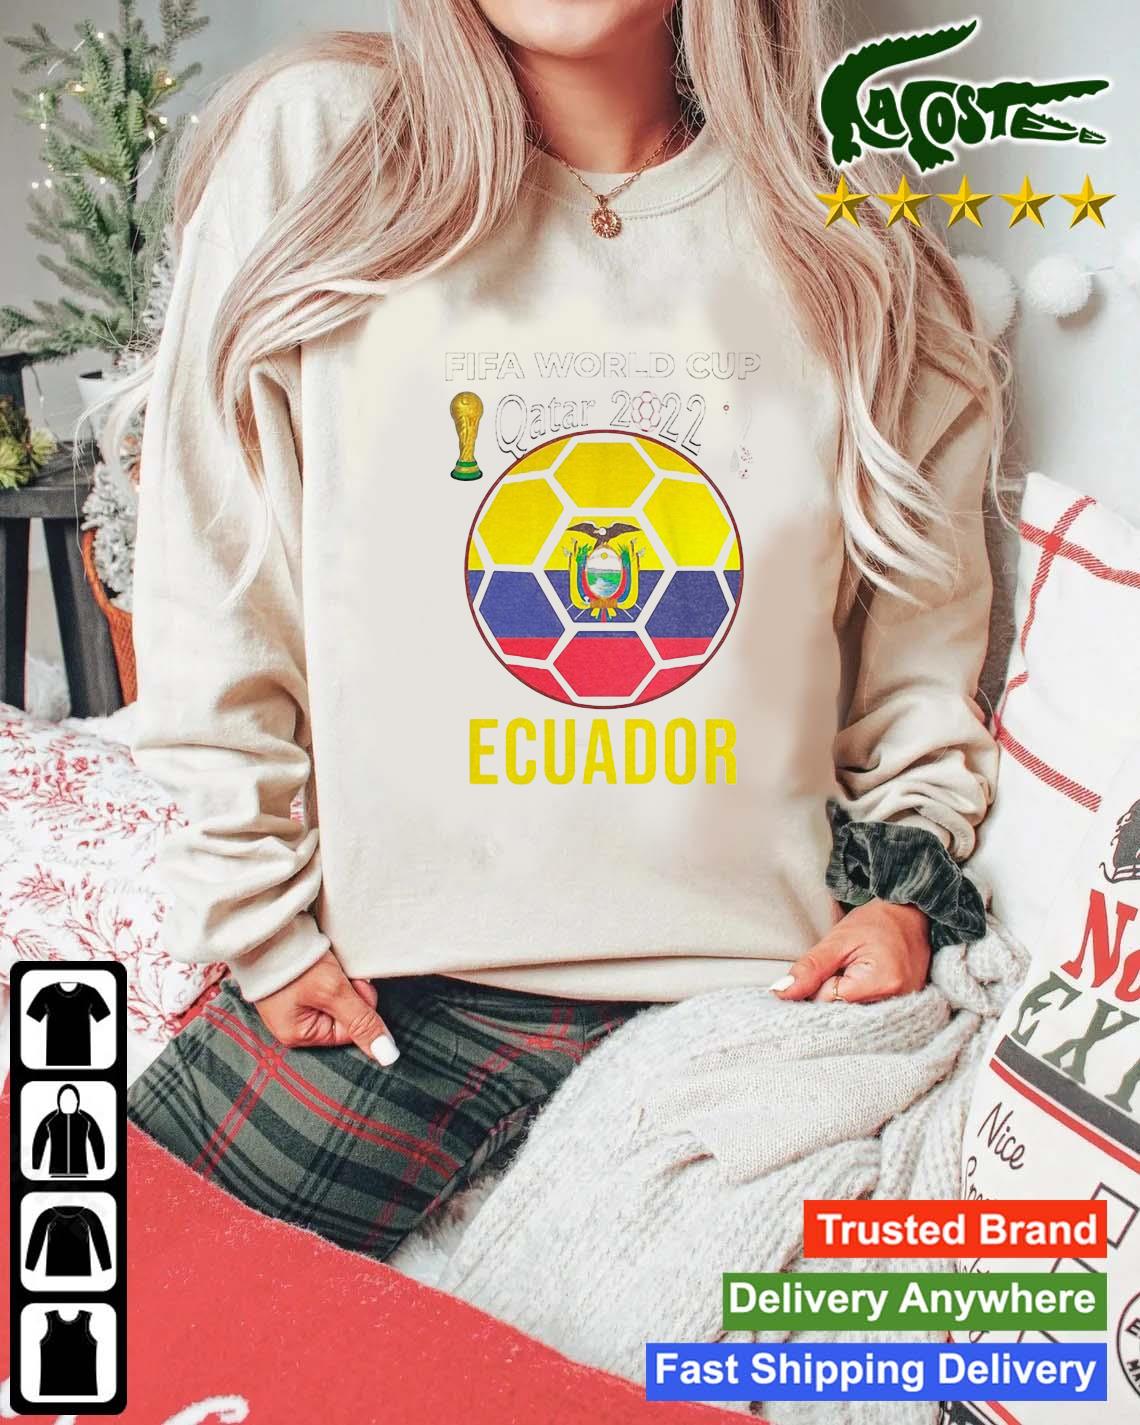 Ecuador Fifa World Cup Qatar 2022 Sweats Mockup Sweater